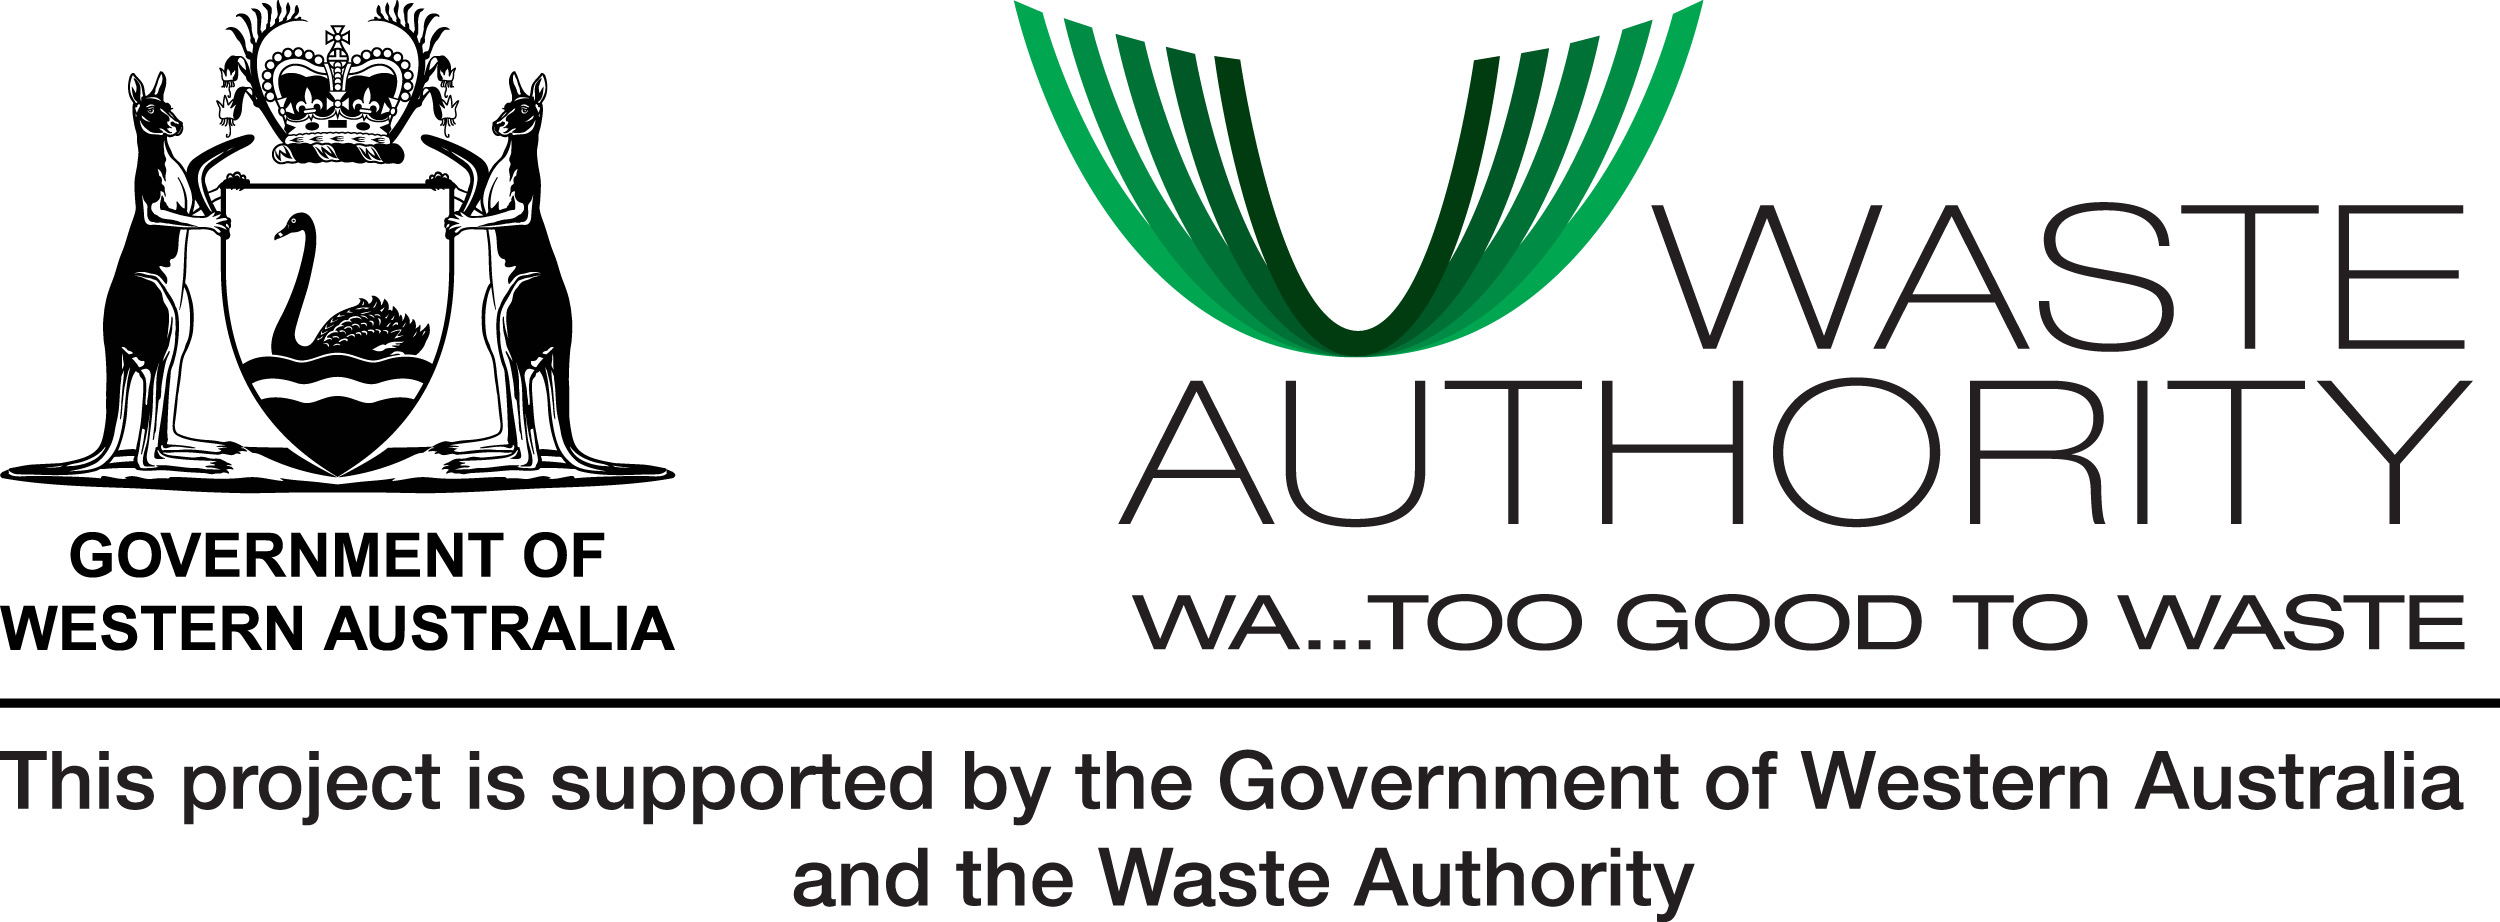 Waste Authority logo.